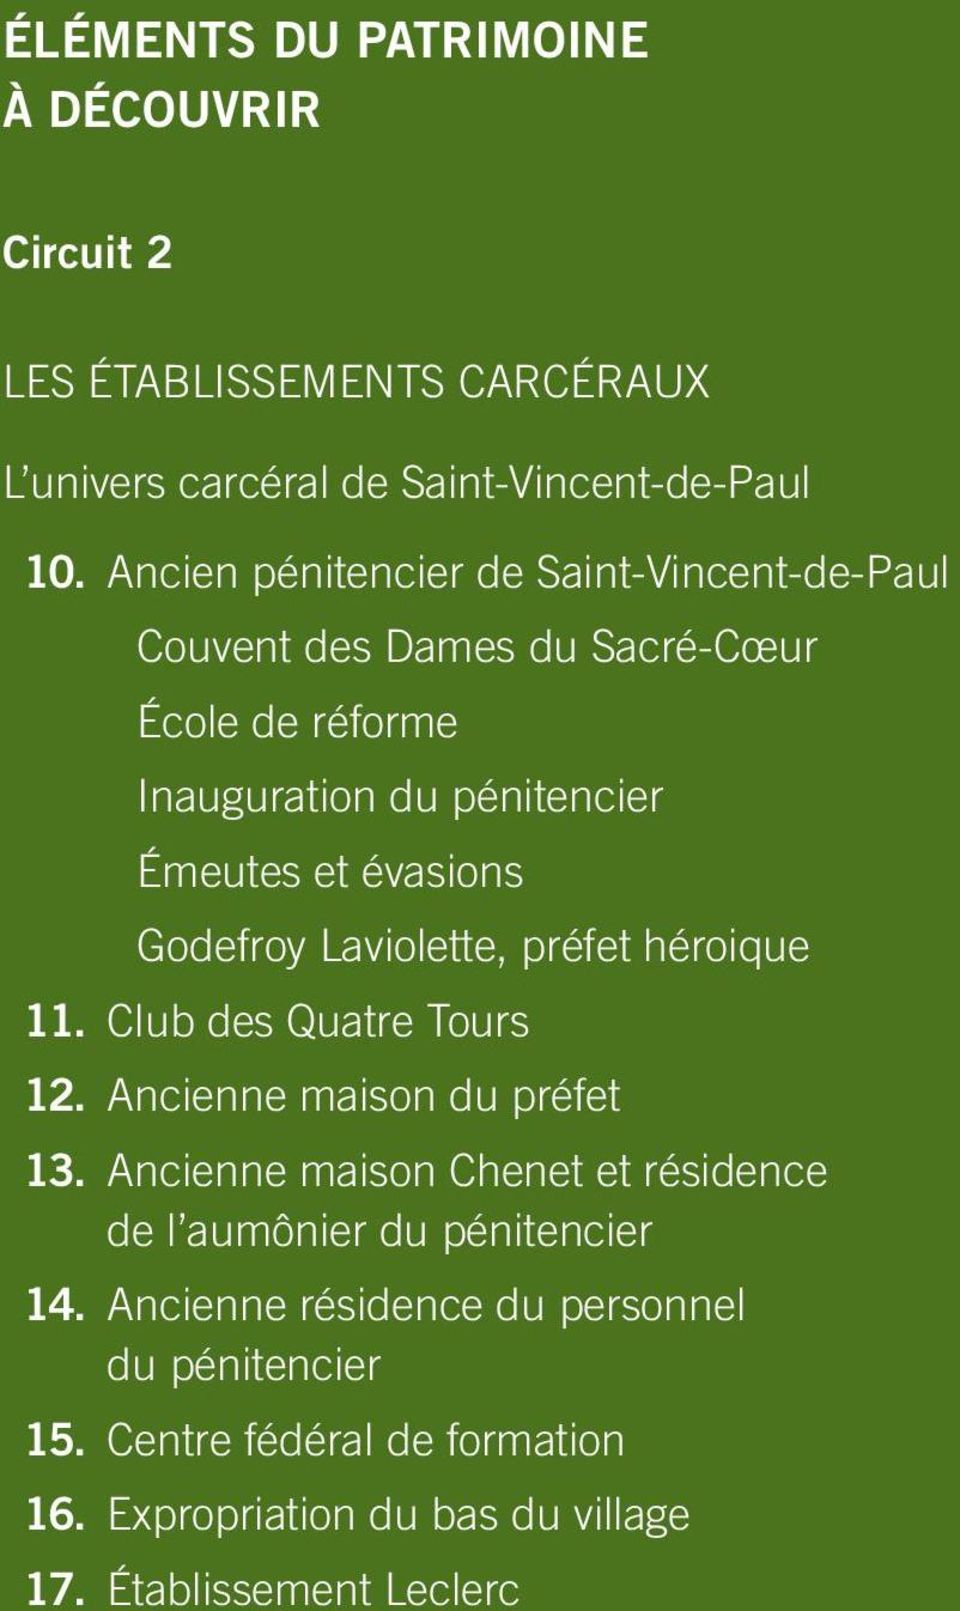 Godefroy Laviolette, préfet héroique 11. Club des Quatre Tours 12. Ancienne maison du préfet 13.